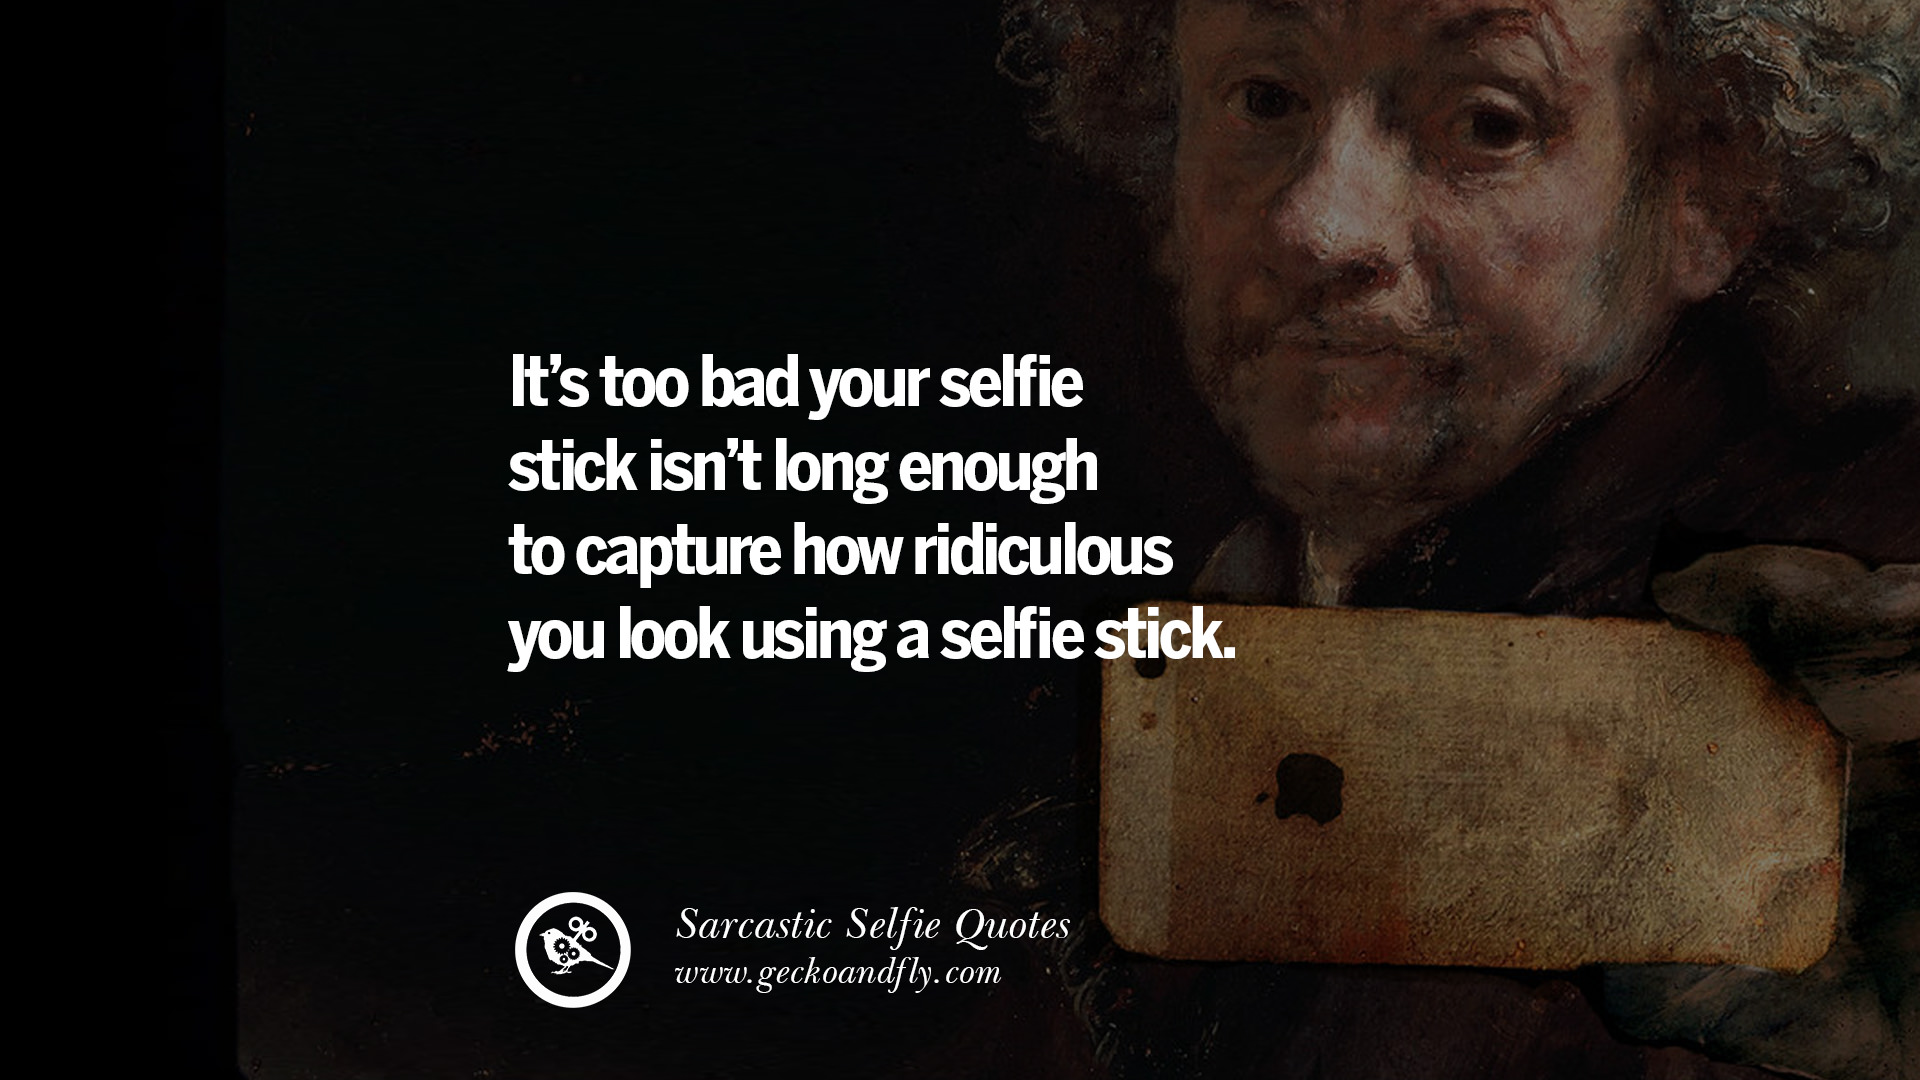 Selfies too facebook many on Selfies Hurt